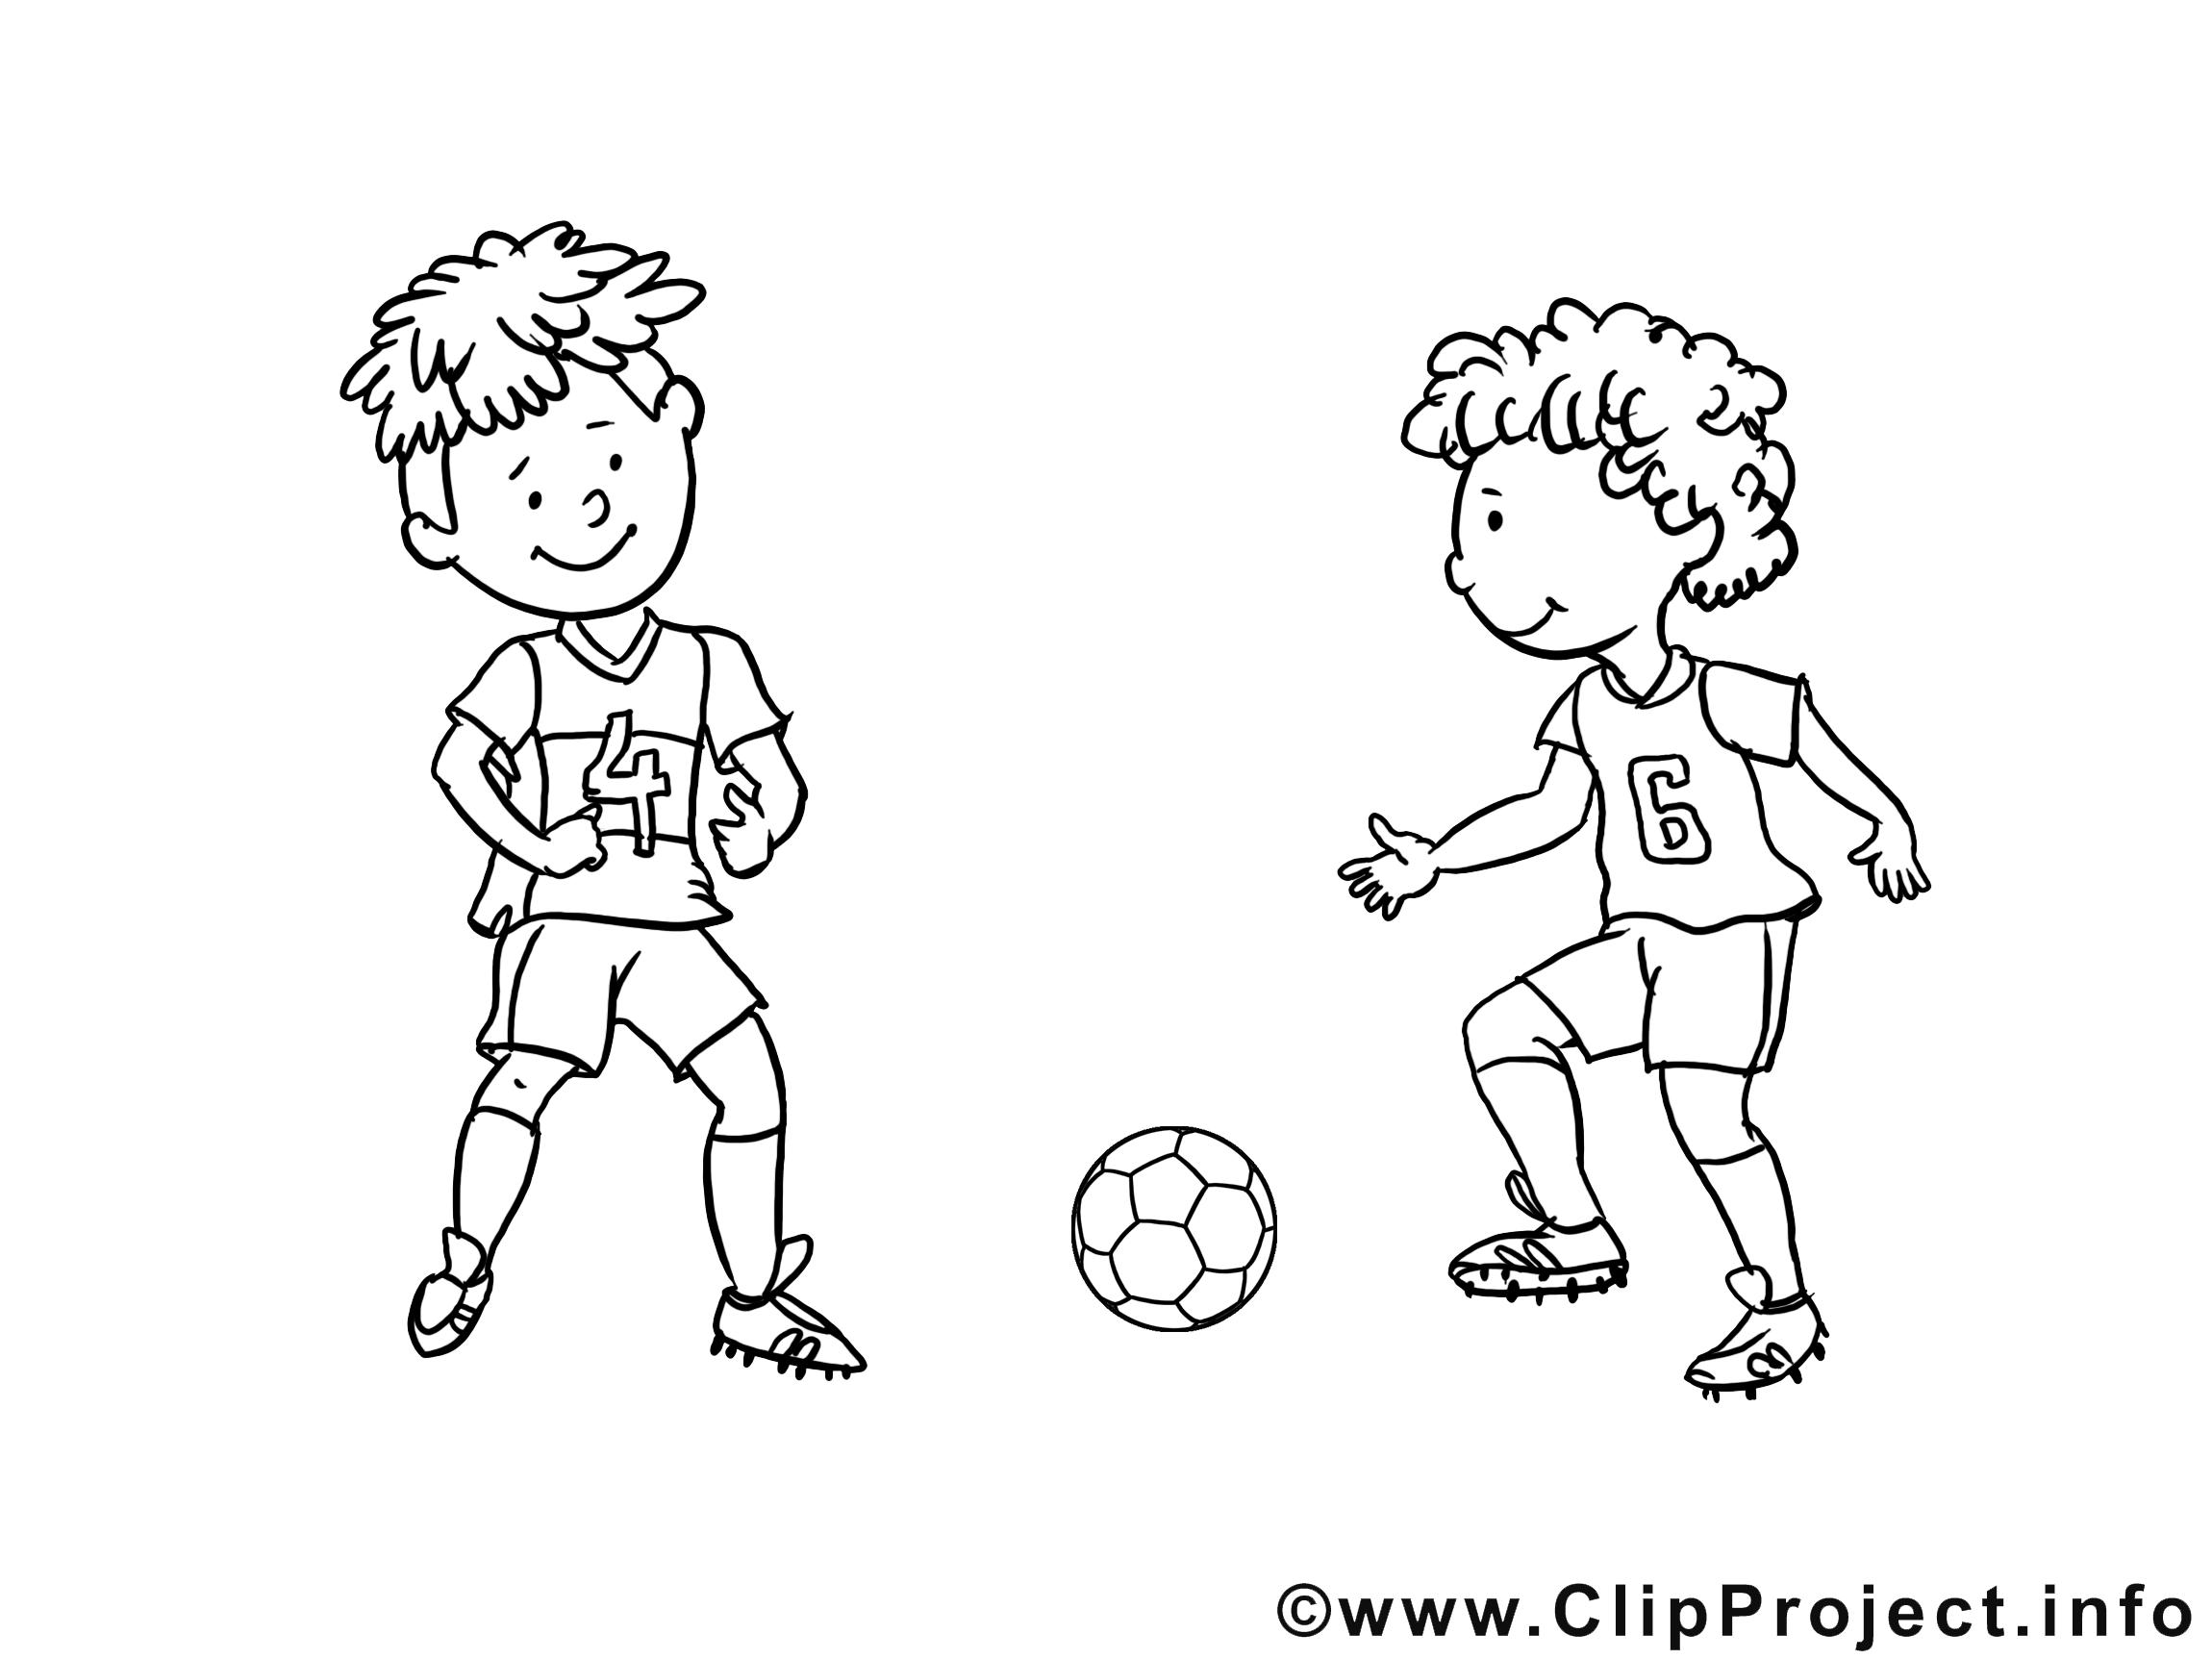 Footballeurs illustration à colorier clipart